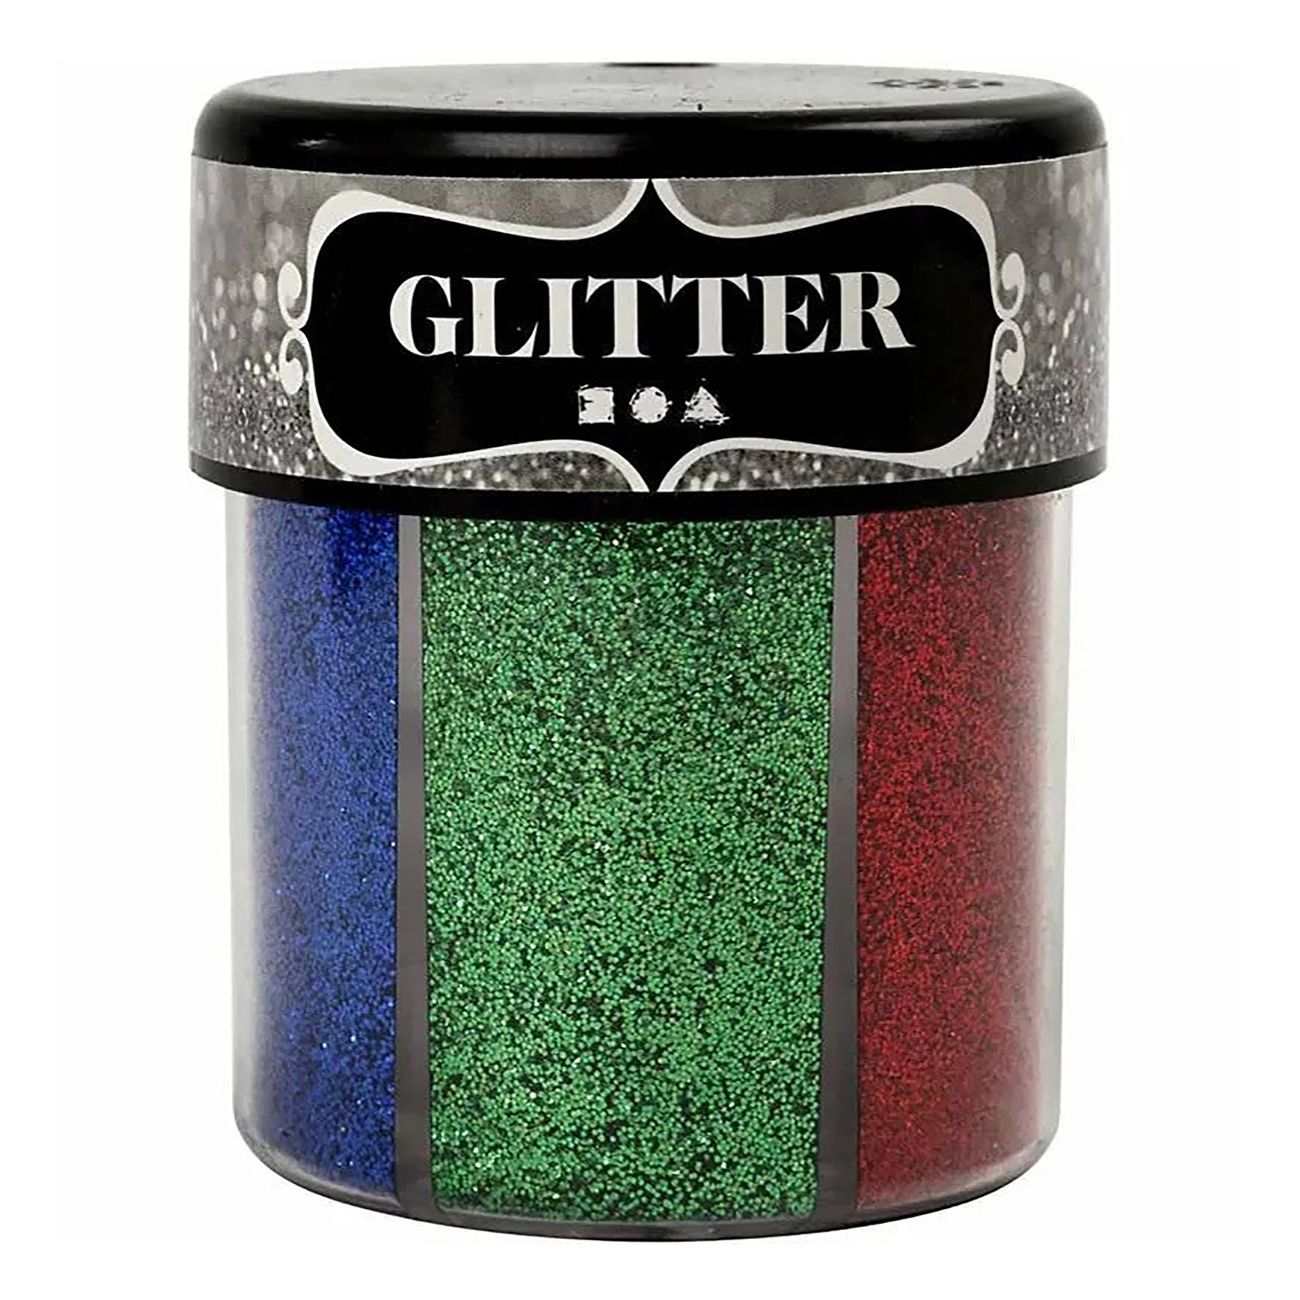 glitter-pa-burk-90999-2